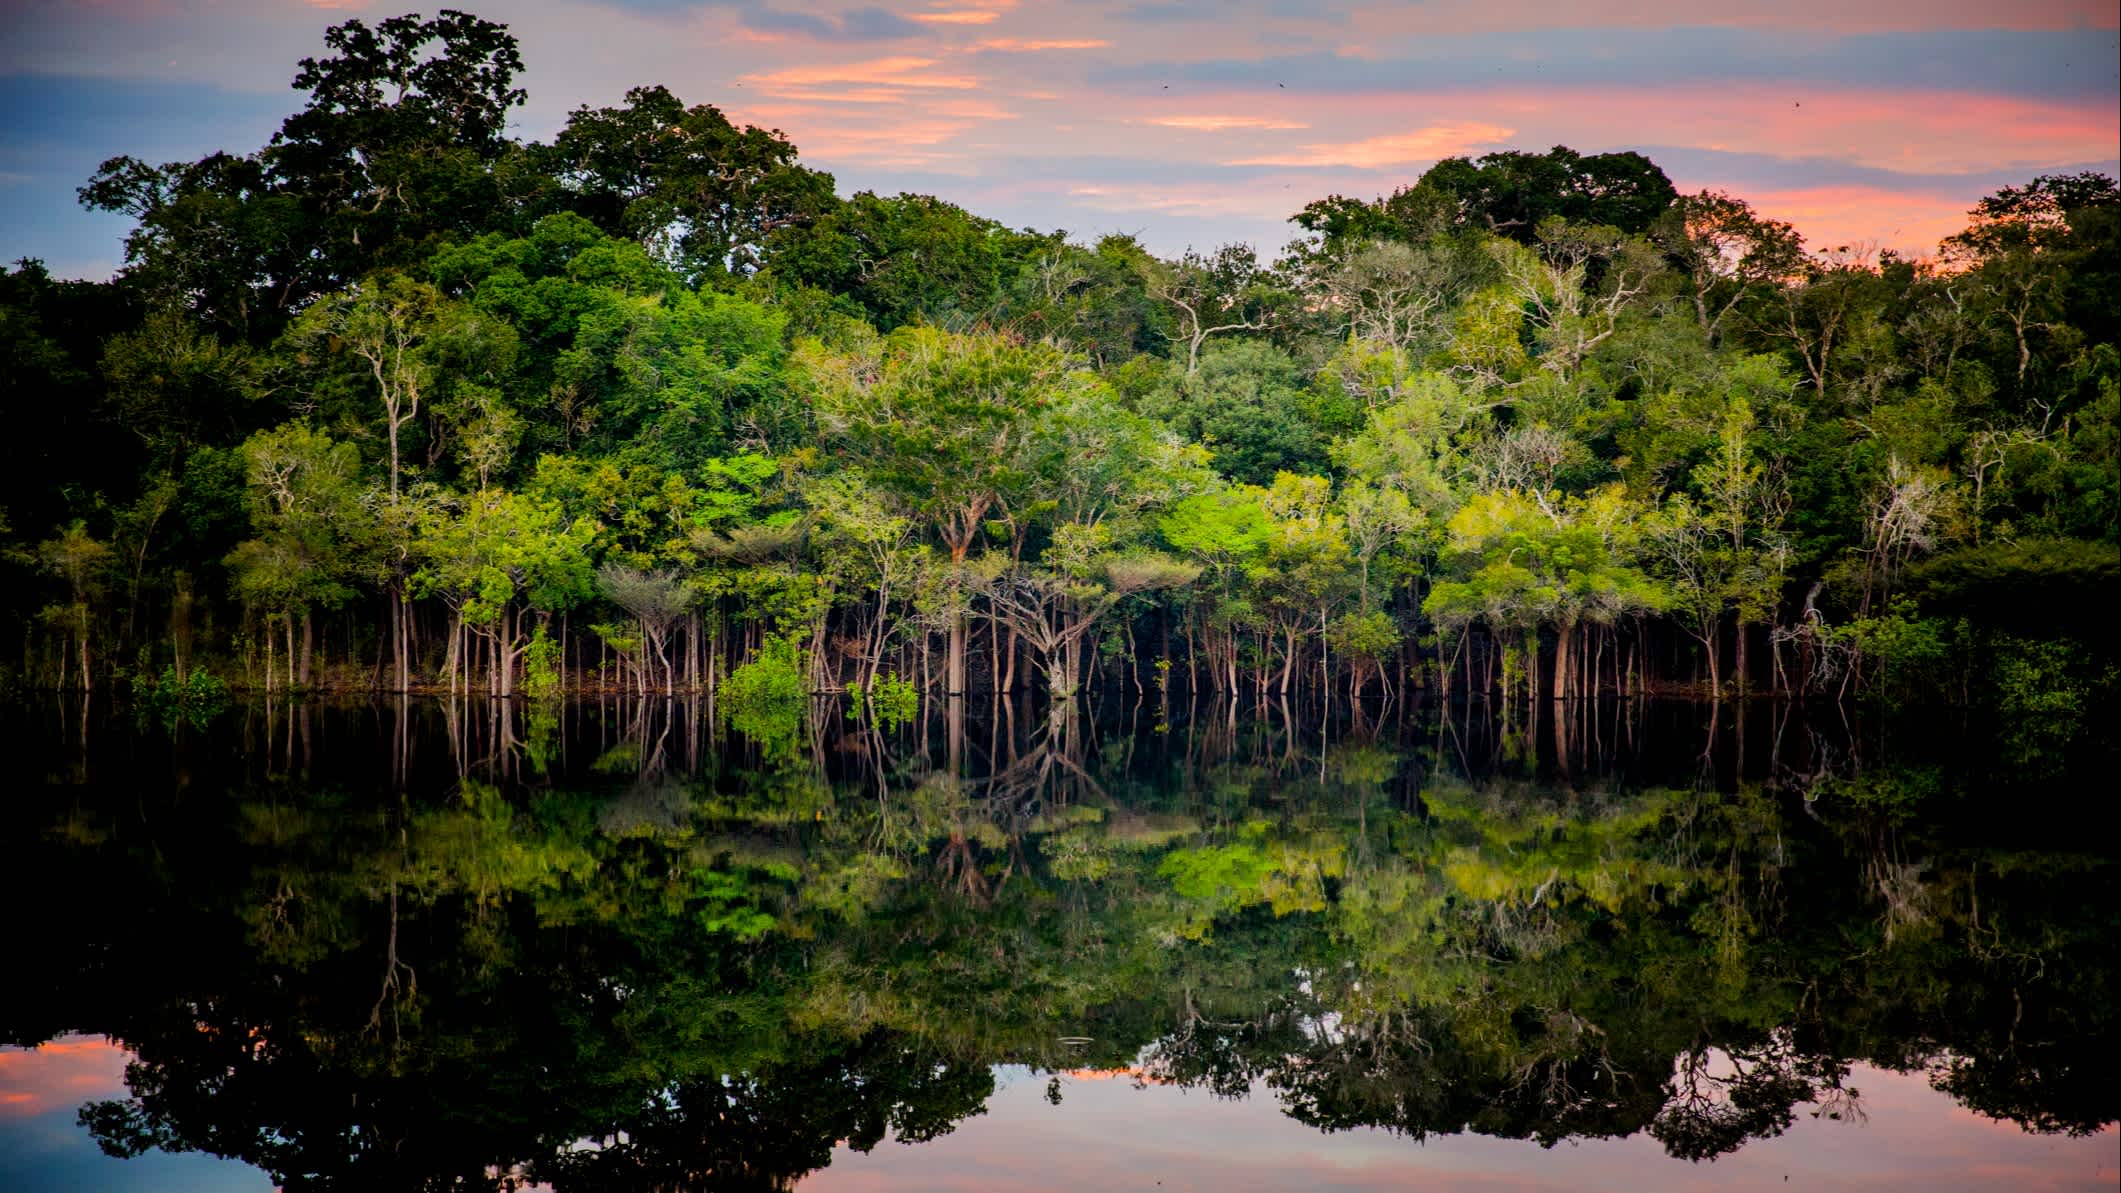 Le coucher de soleil sur la forêt tropicale au bord de l'eau, en Amazonie, au Brésil
